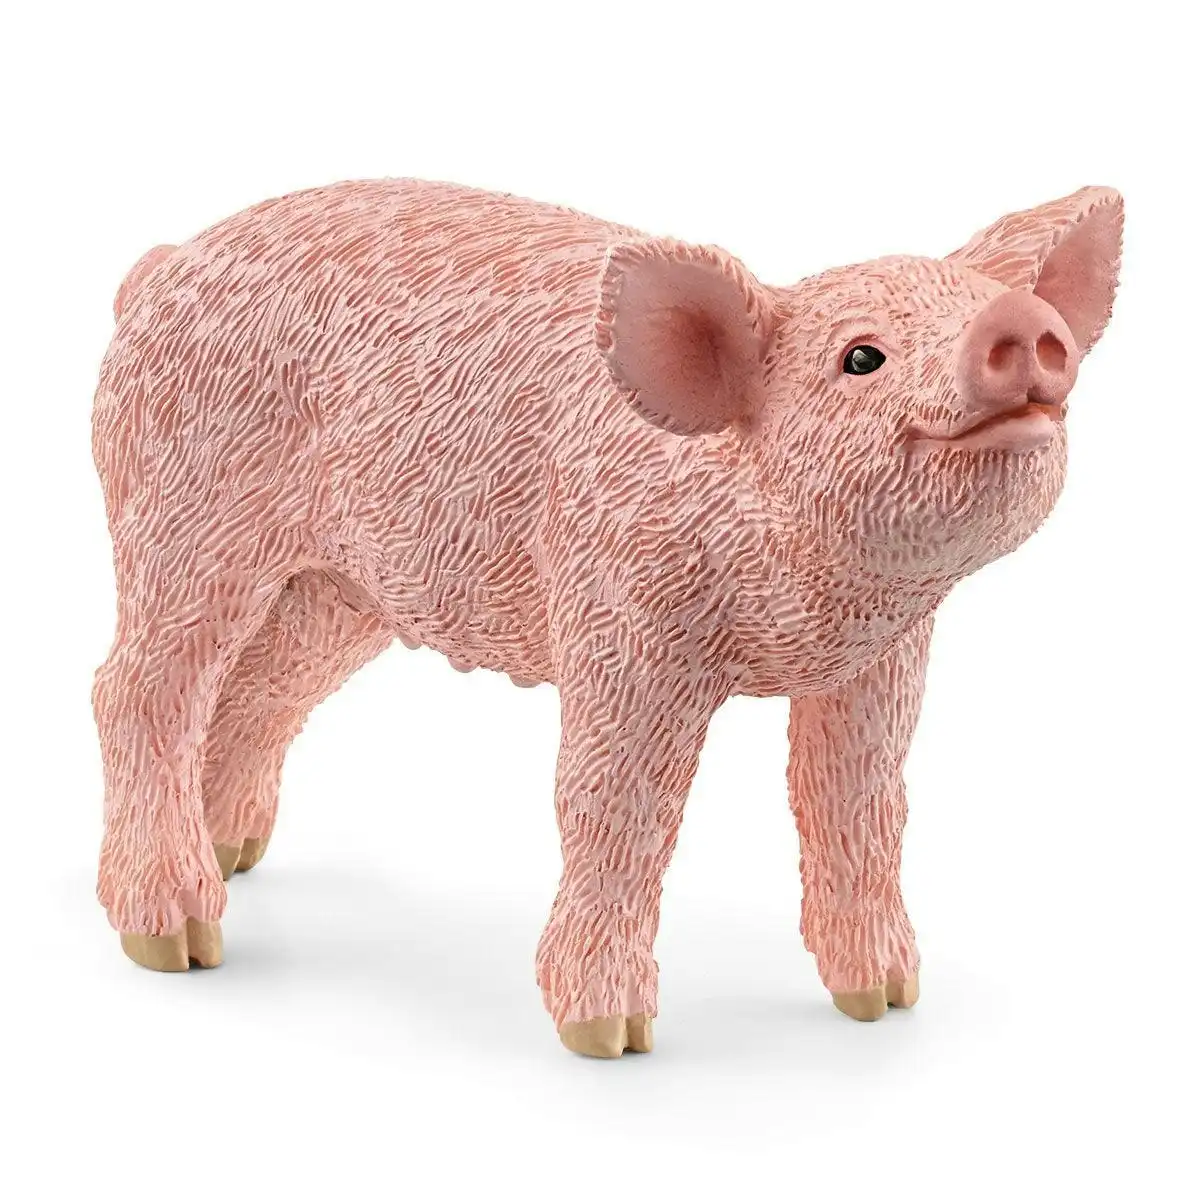 Schleich - Piglet Baby Pig Figurine